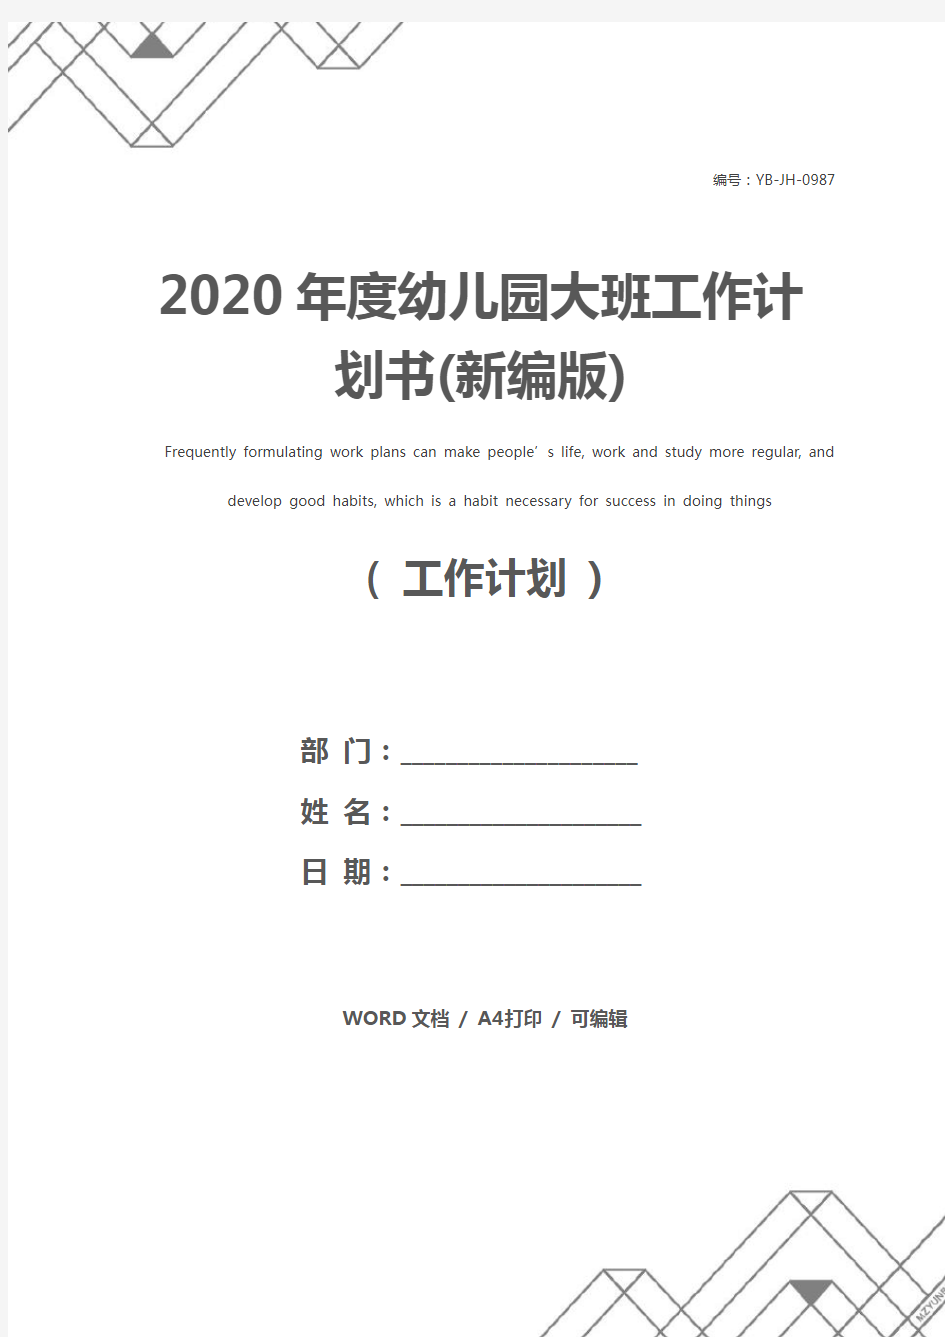 2020年度幼儿园大班工作计划书(新编版)